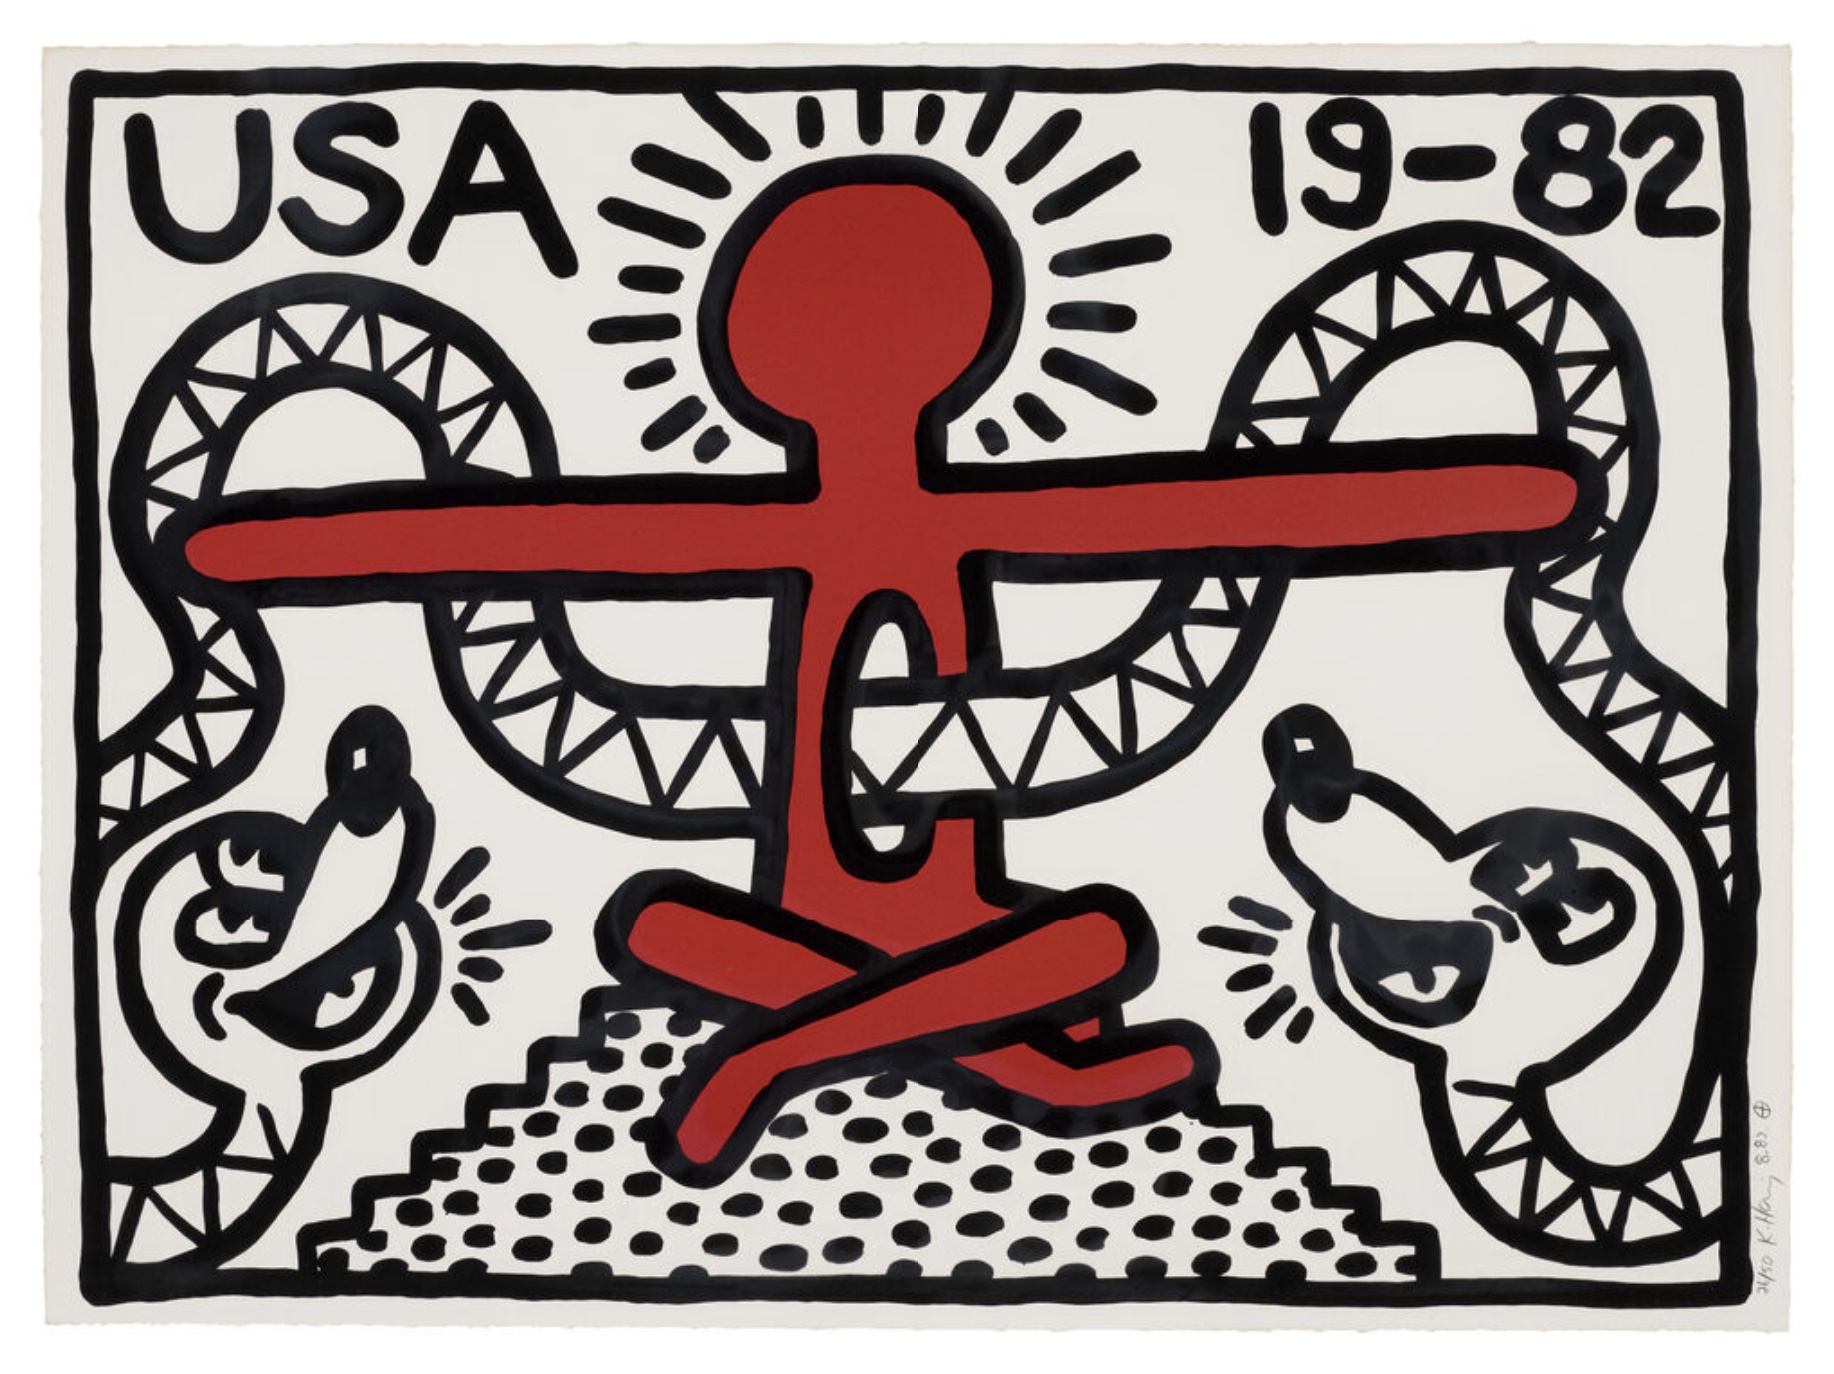 USA 19-82 original print by Keith Haring.